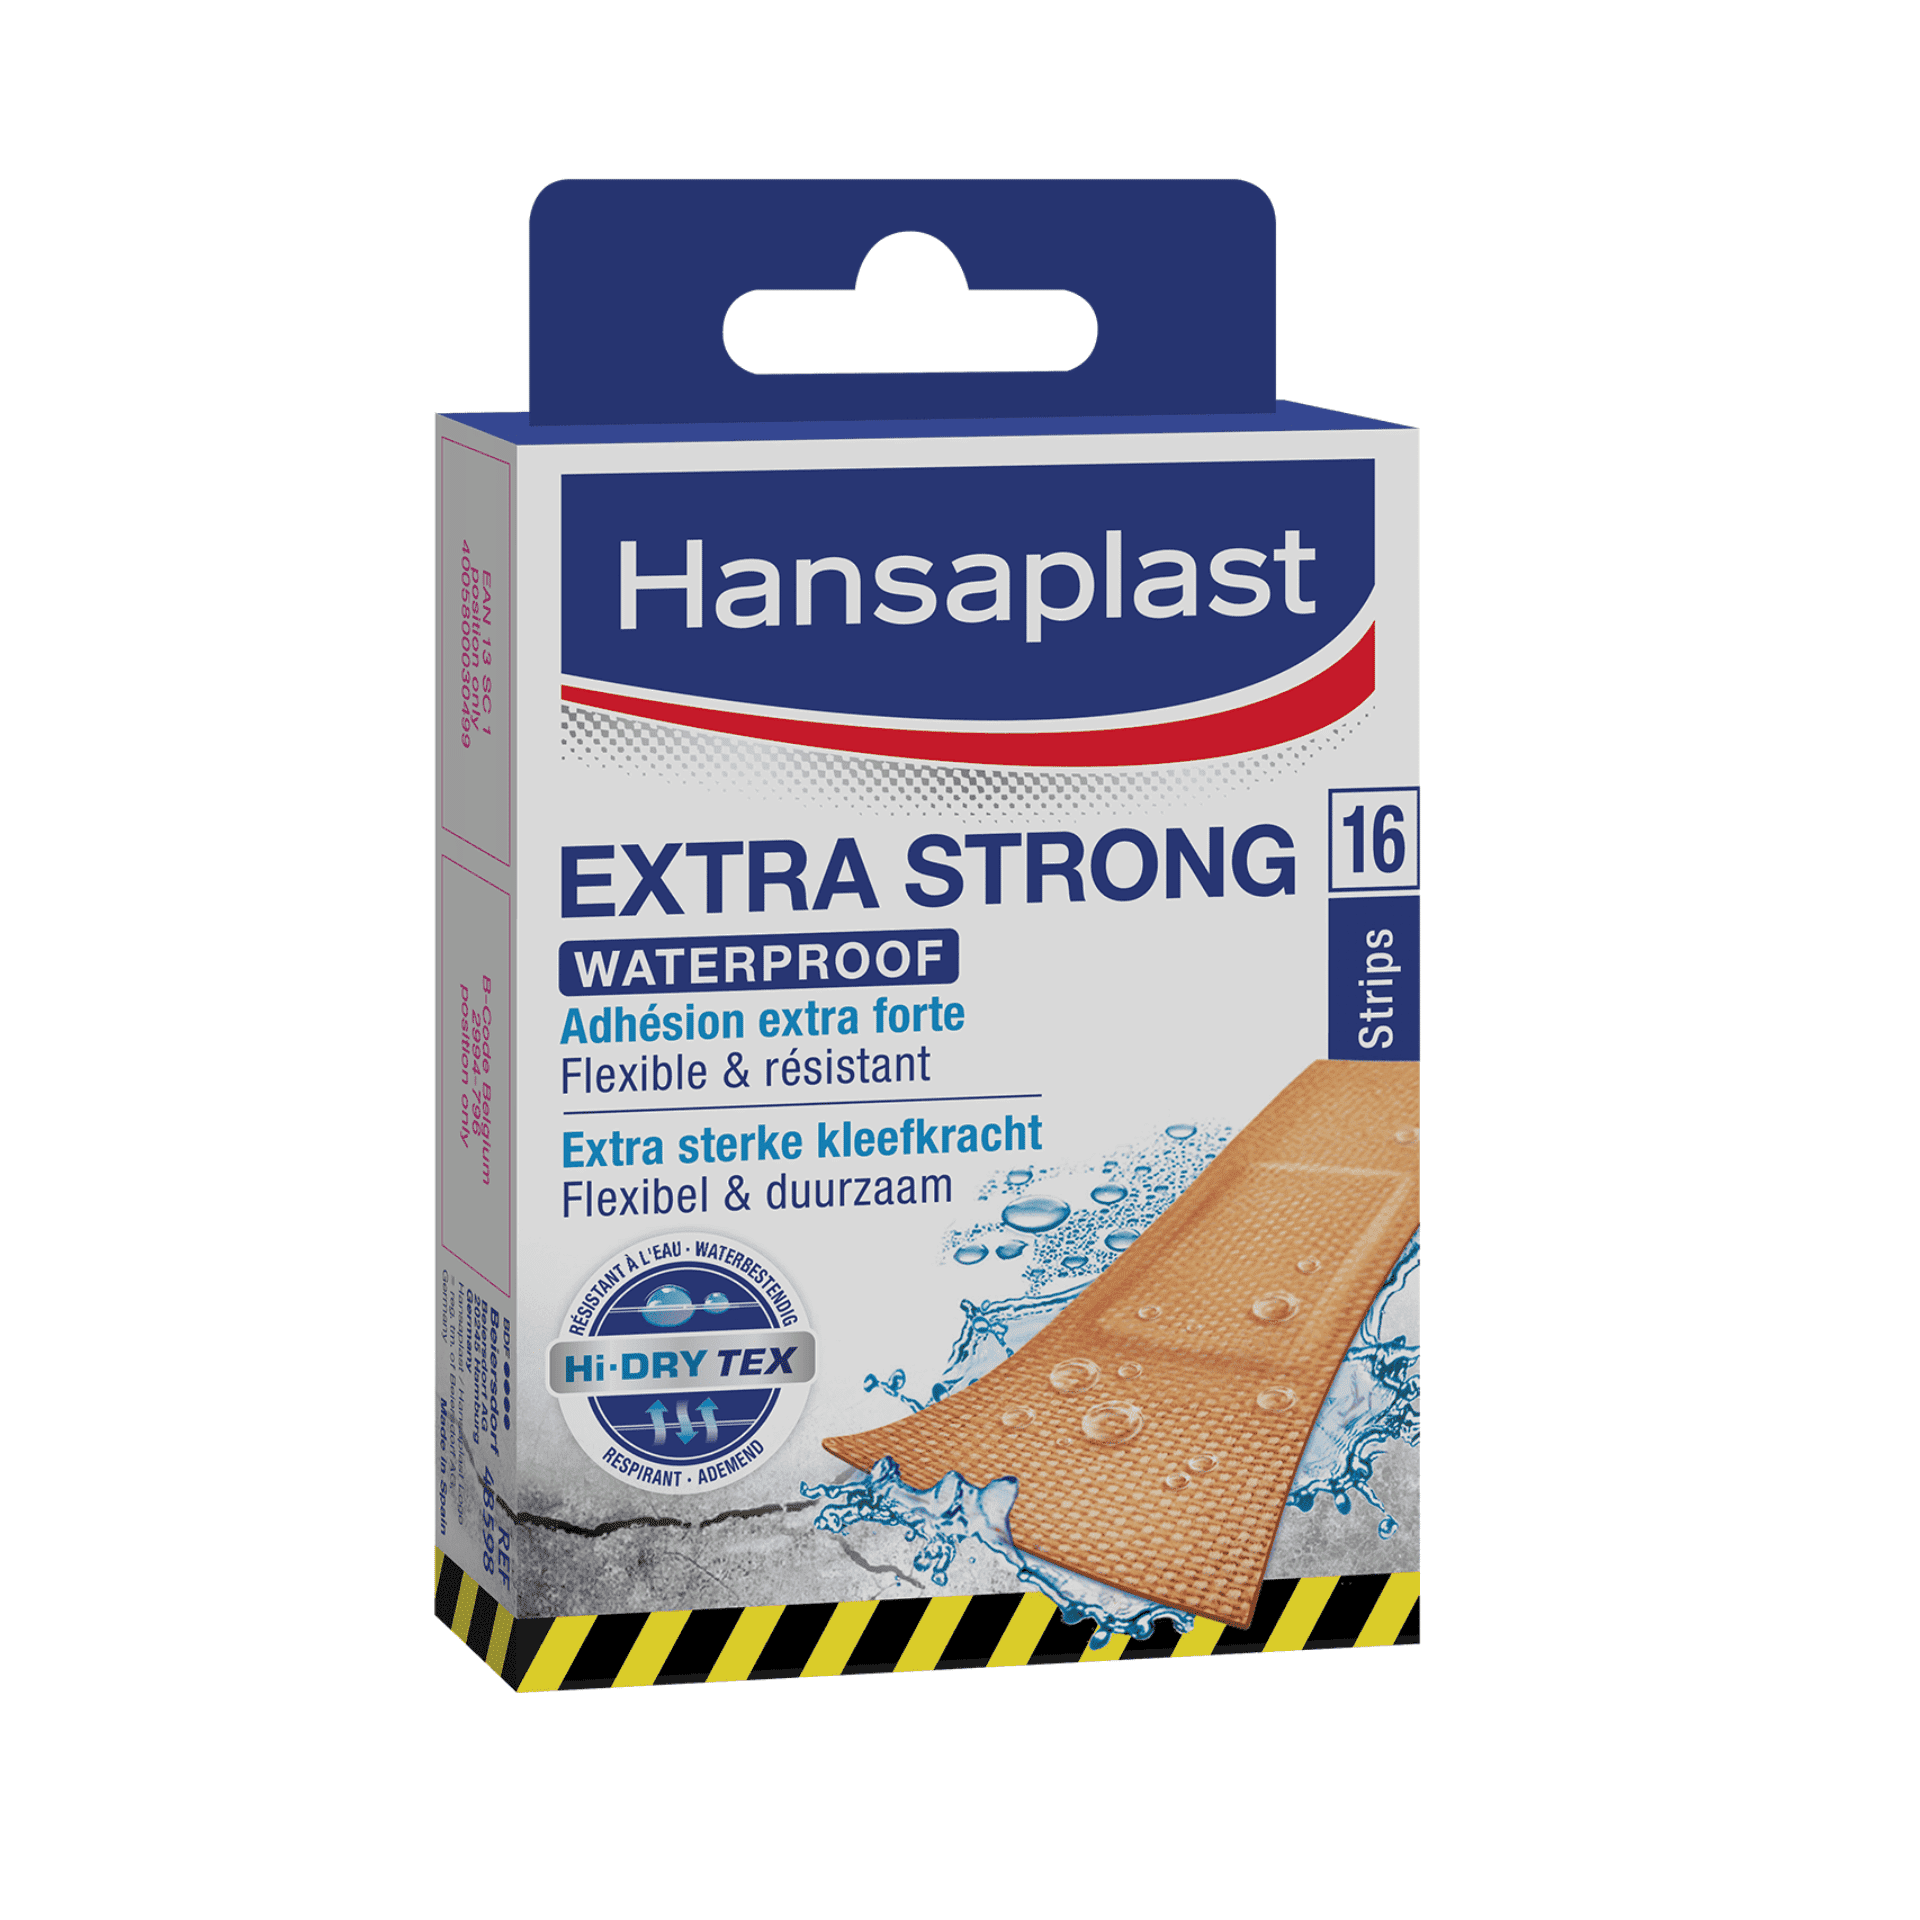 Hansaplast Extra Strong Waterproof Strips 16 stuks